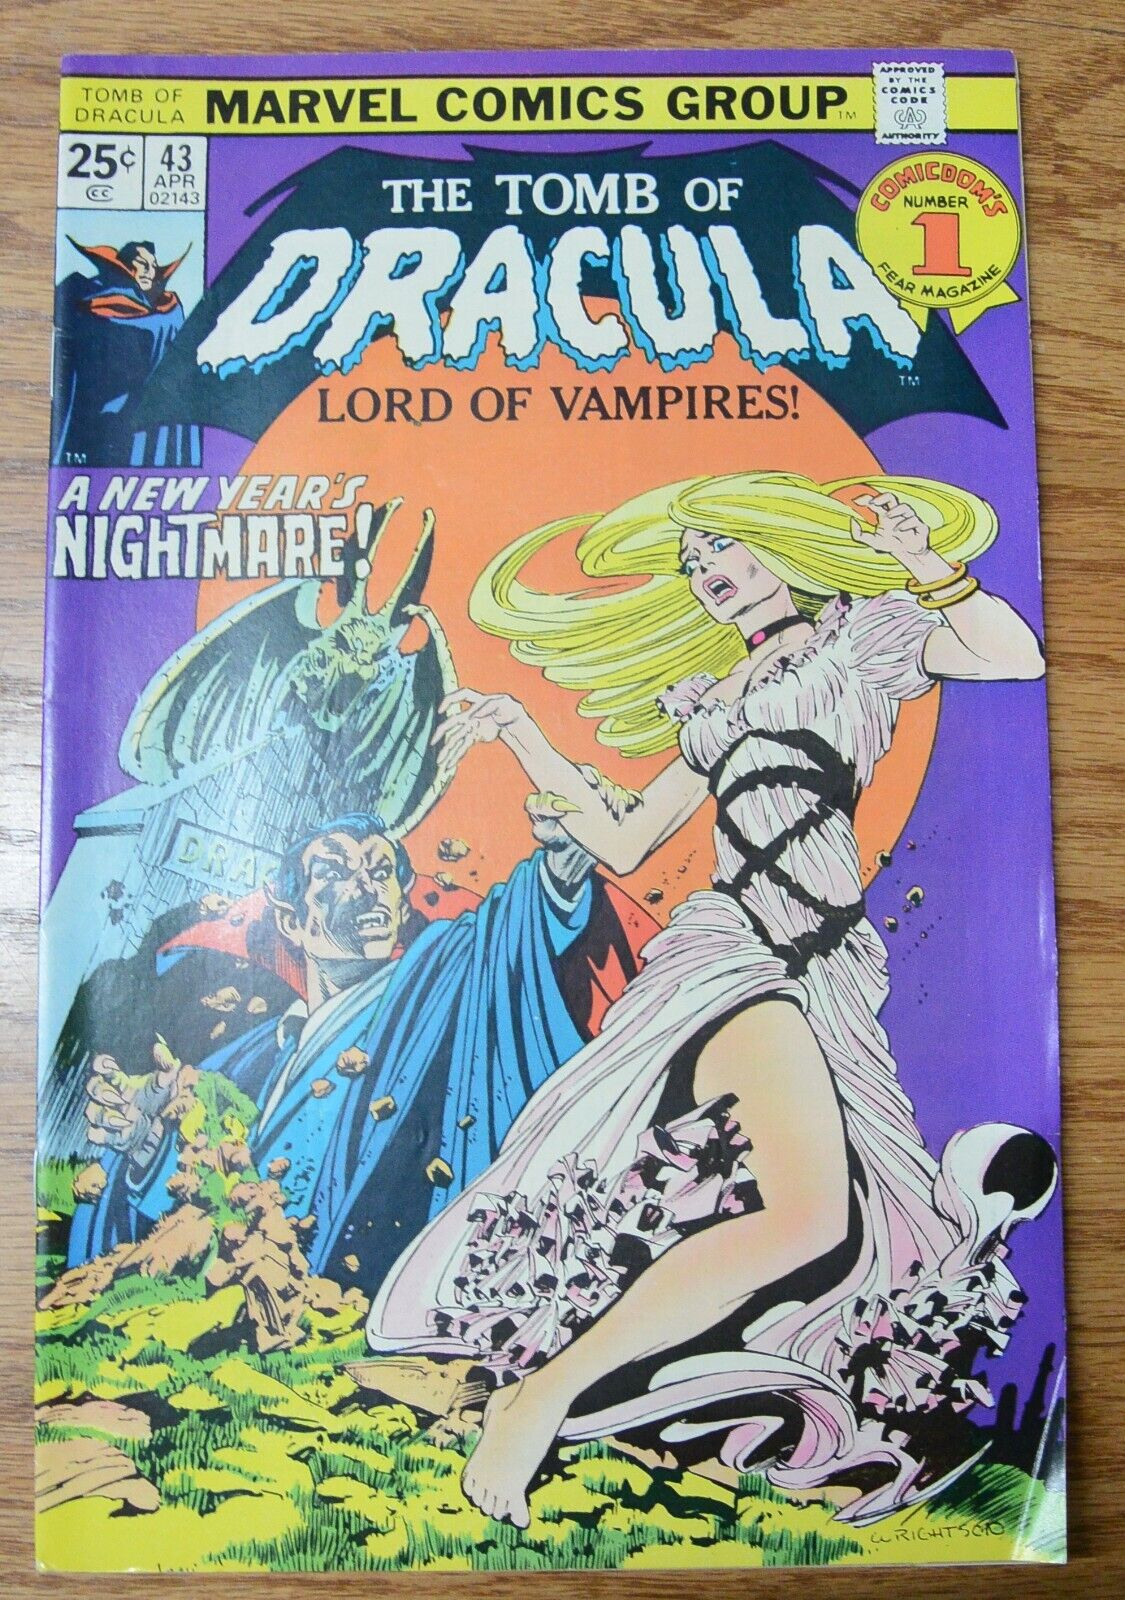 Vintage Marvel Comics The Tomb of Dracula Vol 1 No 43 April 1976 Comic Book